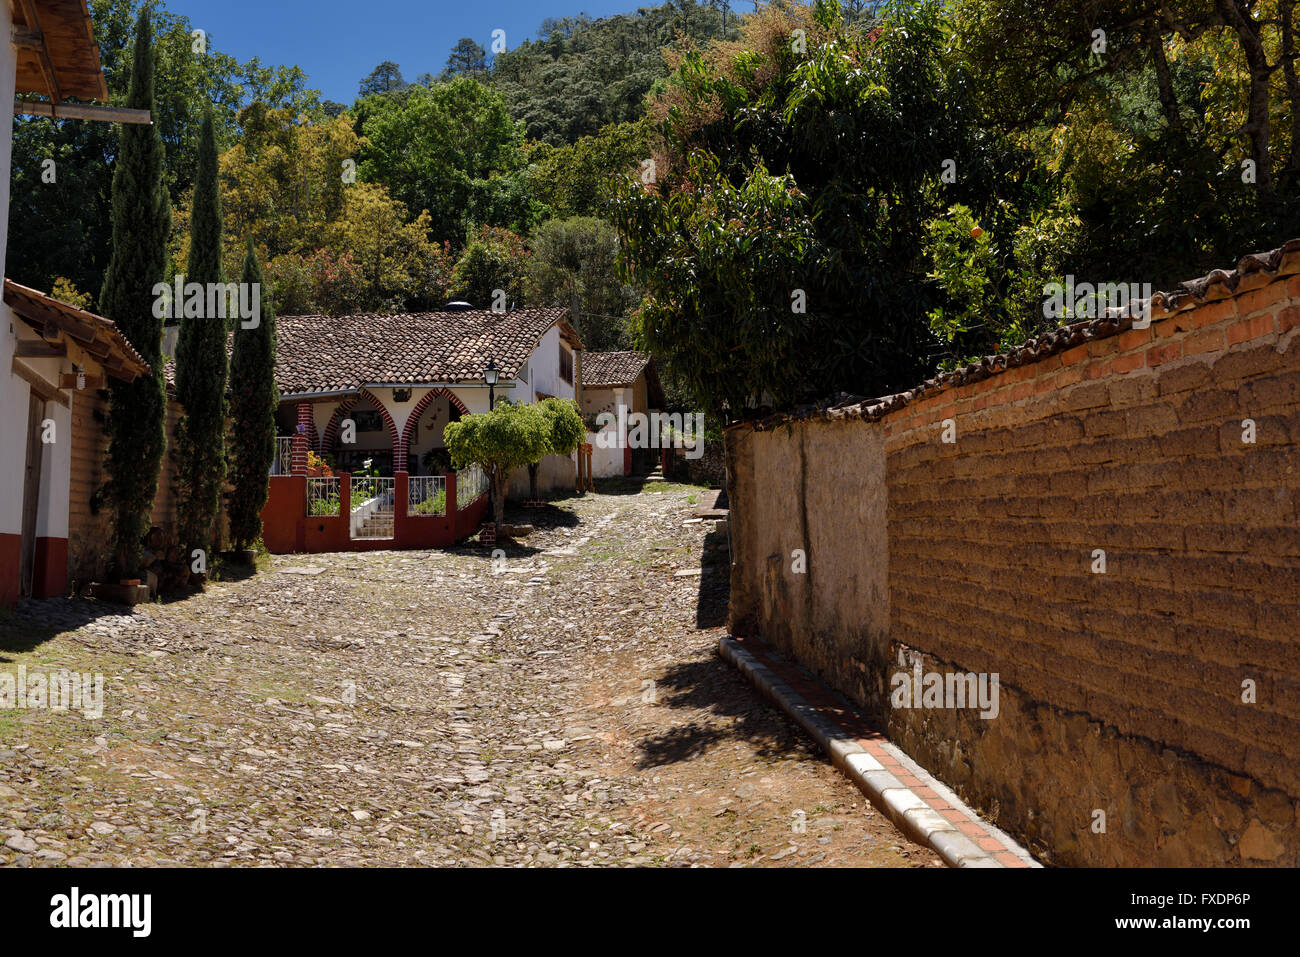 Casas de ladera en el camino de piedra en San Sebastian del Oeste Jalisco México Foto de stock